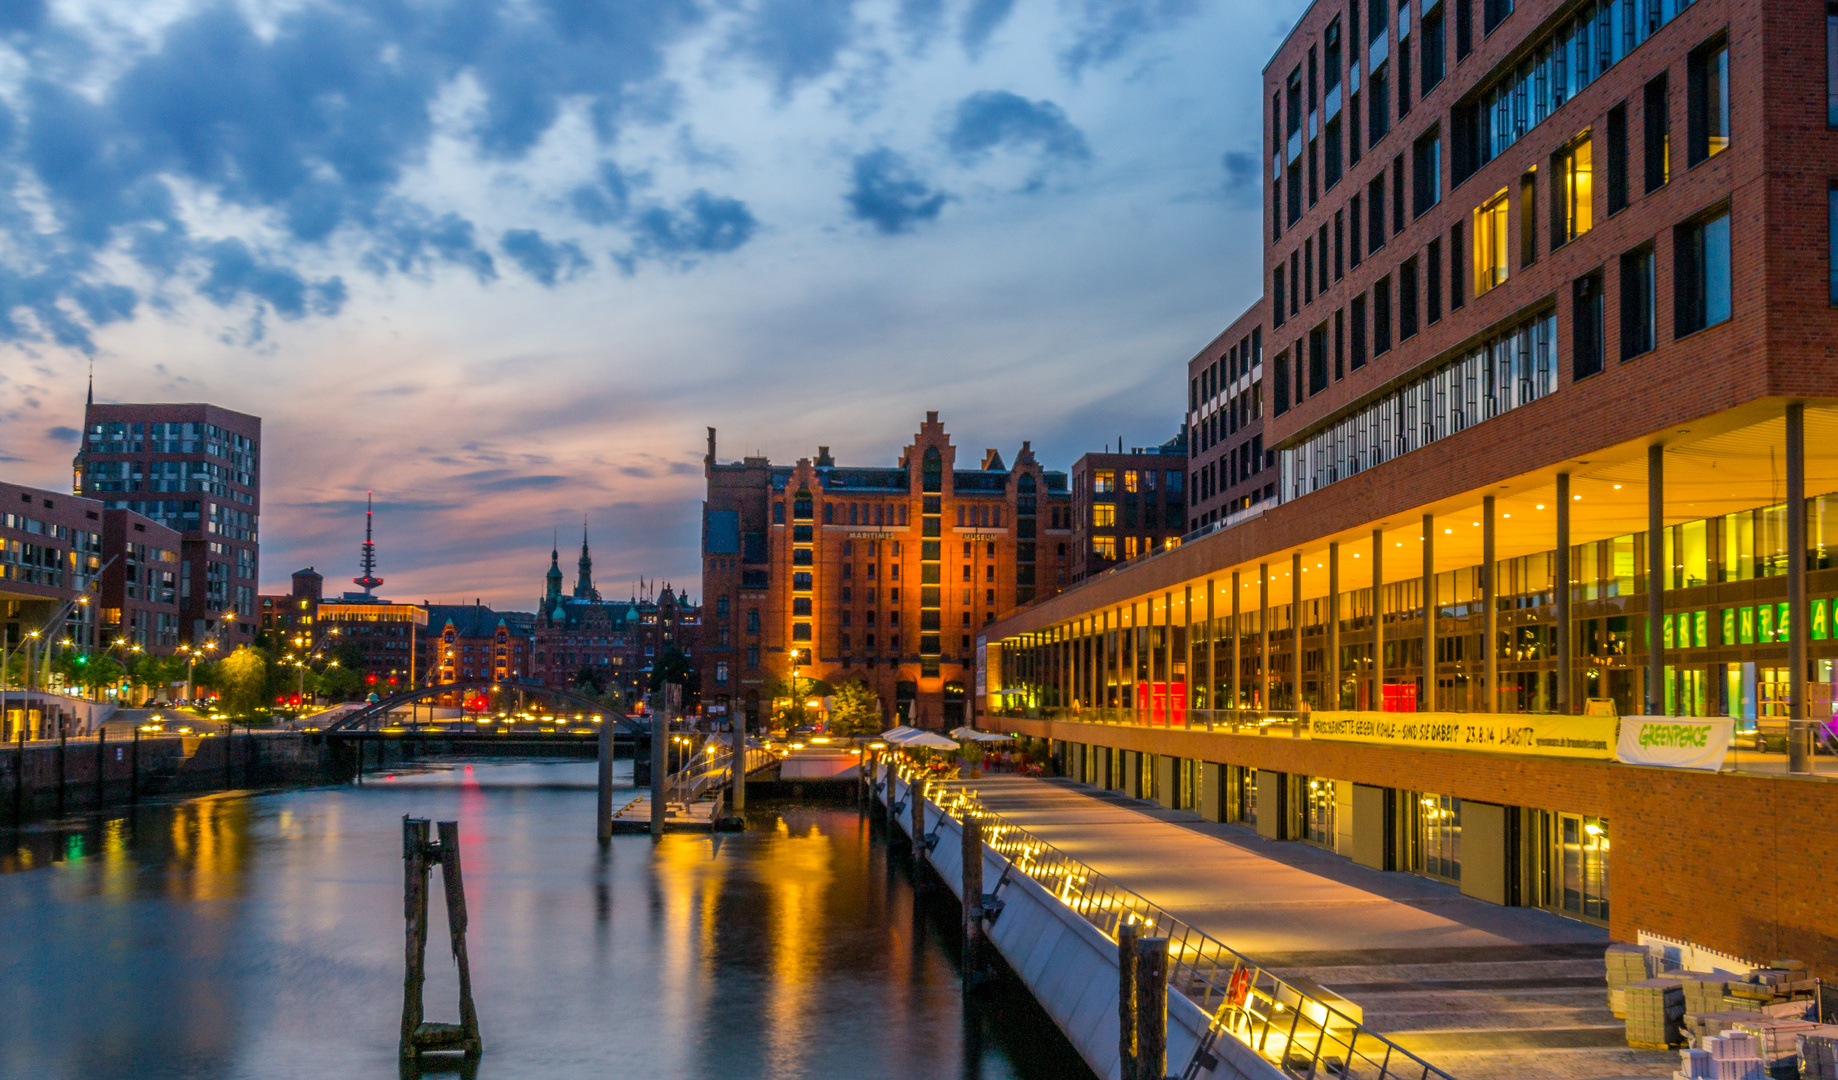 HafenCity Hamburg in der Abenddämmerung